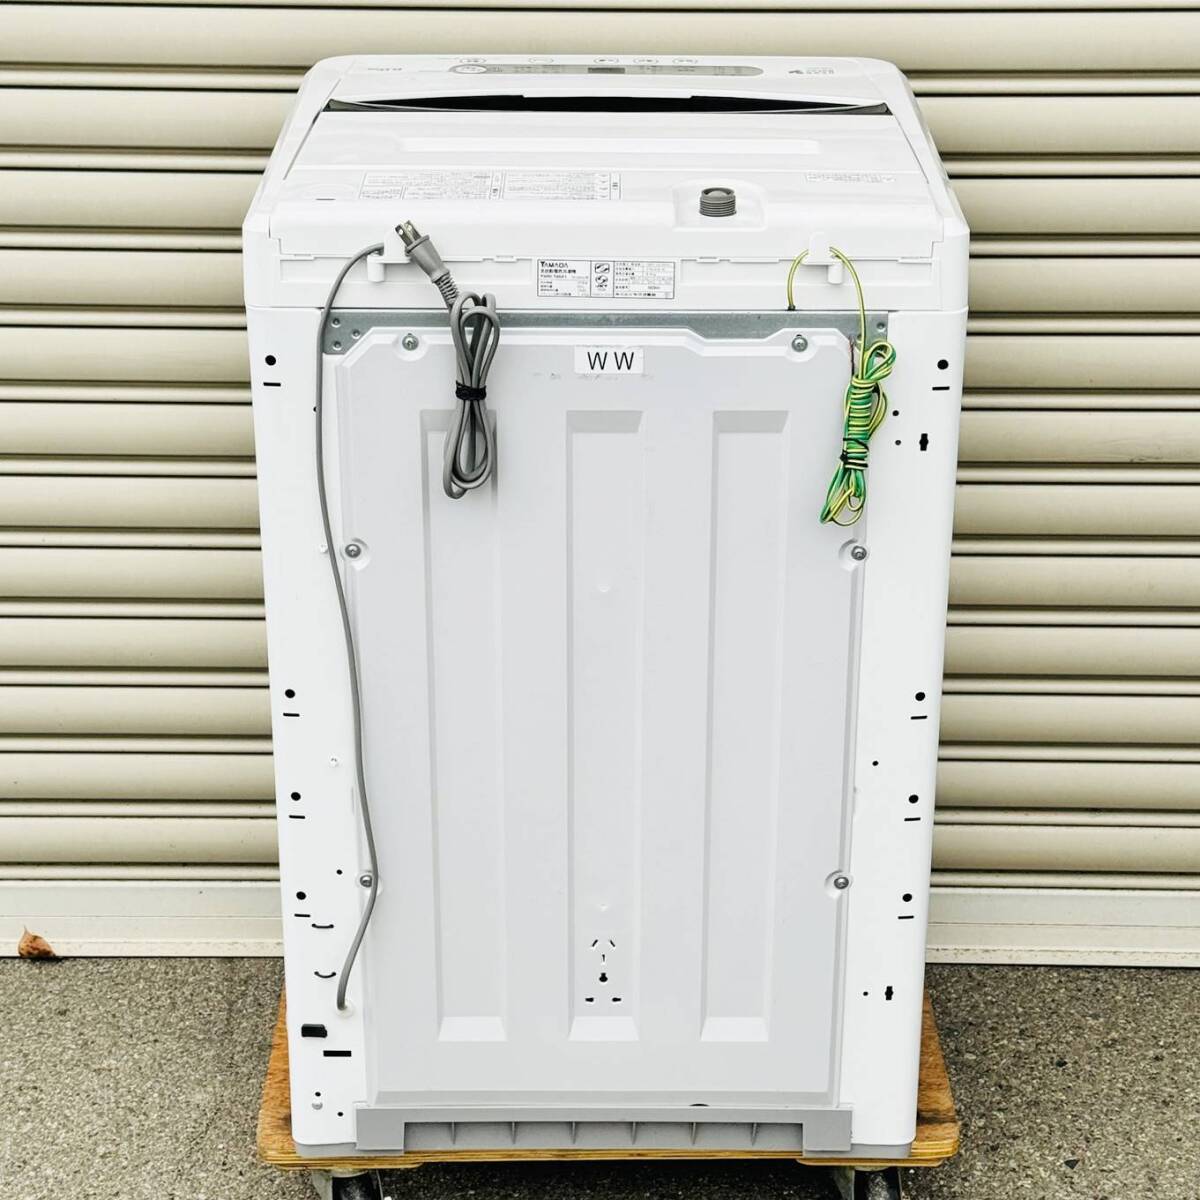 甲MJ17547 クリーニング済 動作確認済 2017年製 6.0㎏ ヤマダ電機 全自動電気洗濯機 YWM-T60A1 ホース付 ホワイト 白色 家電の画像9